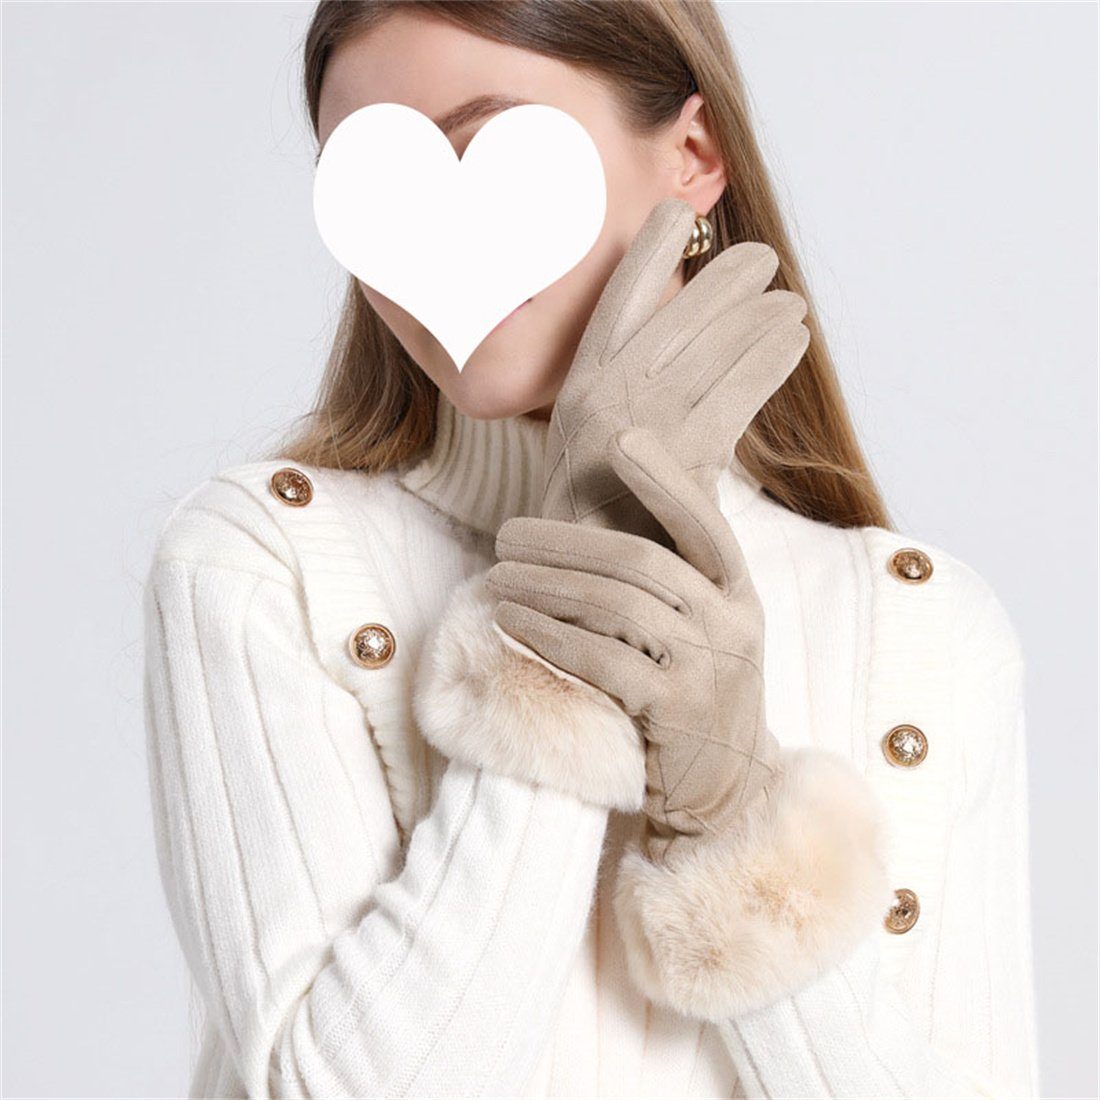 DÖRÖY Touchscreen warme Damen Kunstfell Beige gepolsterte Handschuhe Fleecehandschuhe Handschuhe,